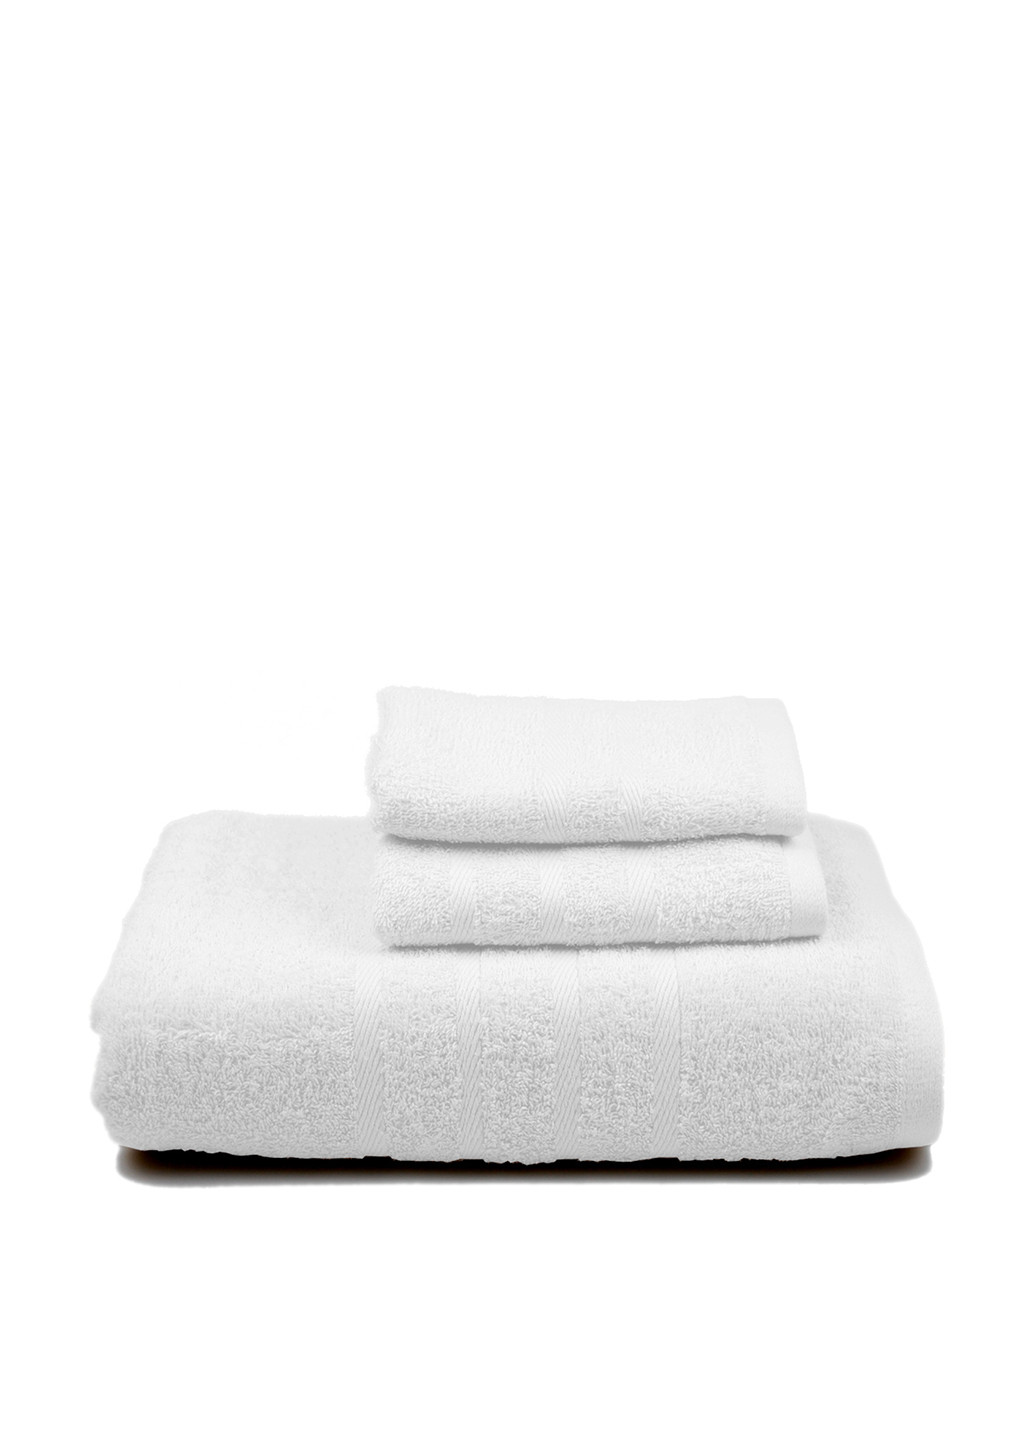 No Brand полотенце, 70х140 см однотонный белый производство - Пакистан